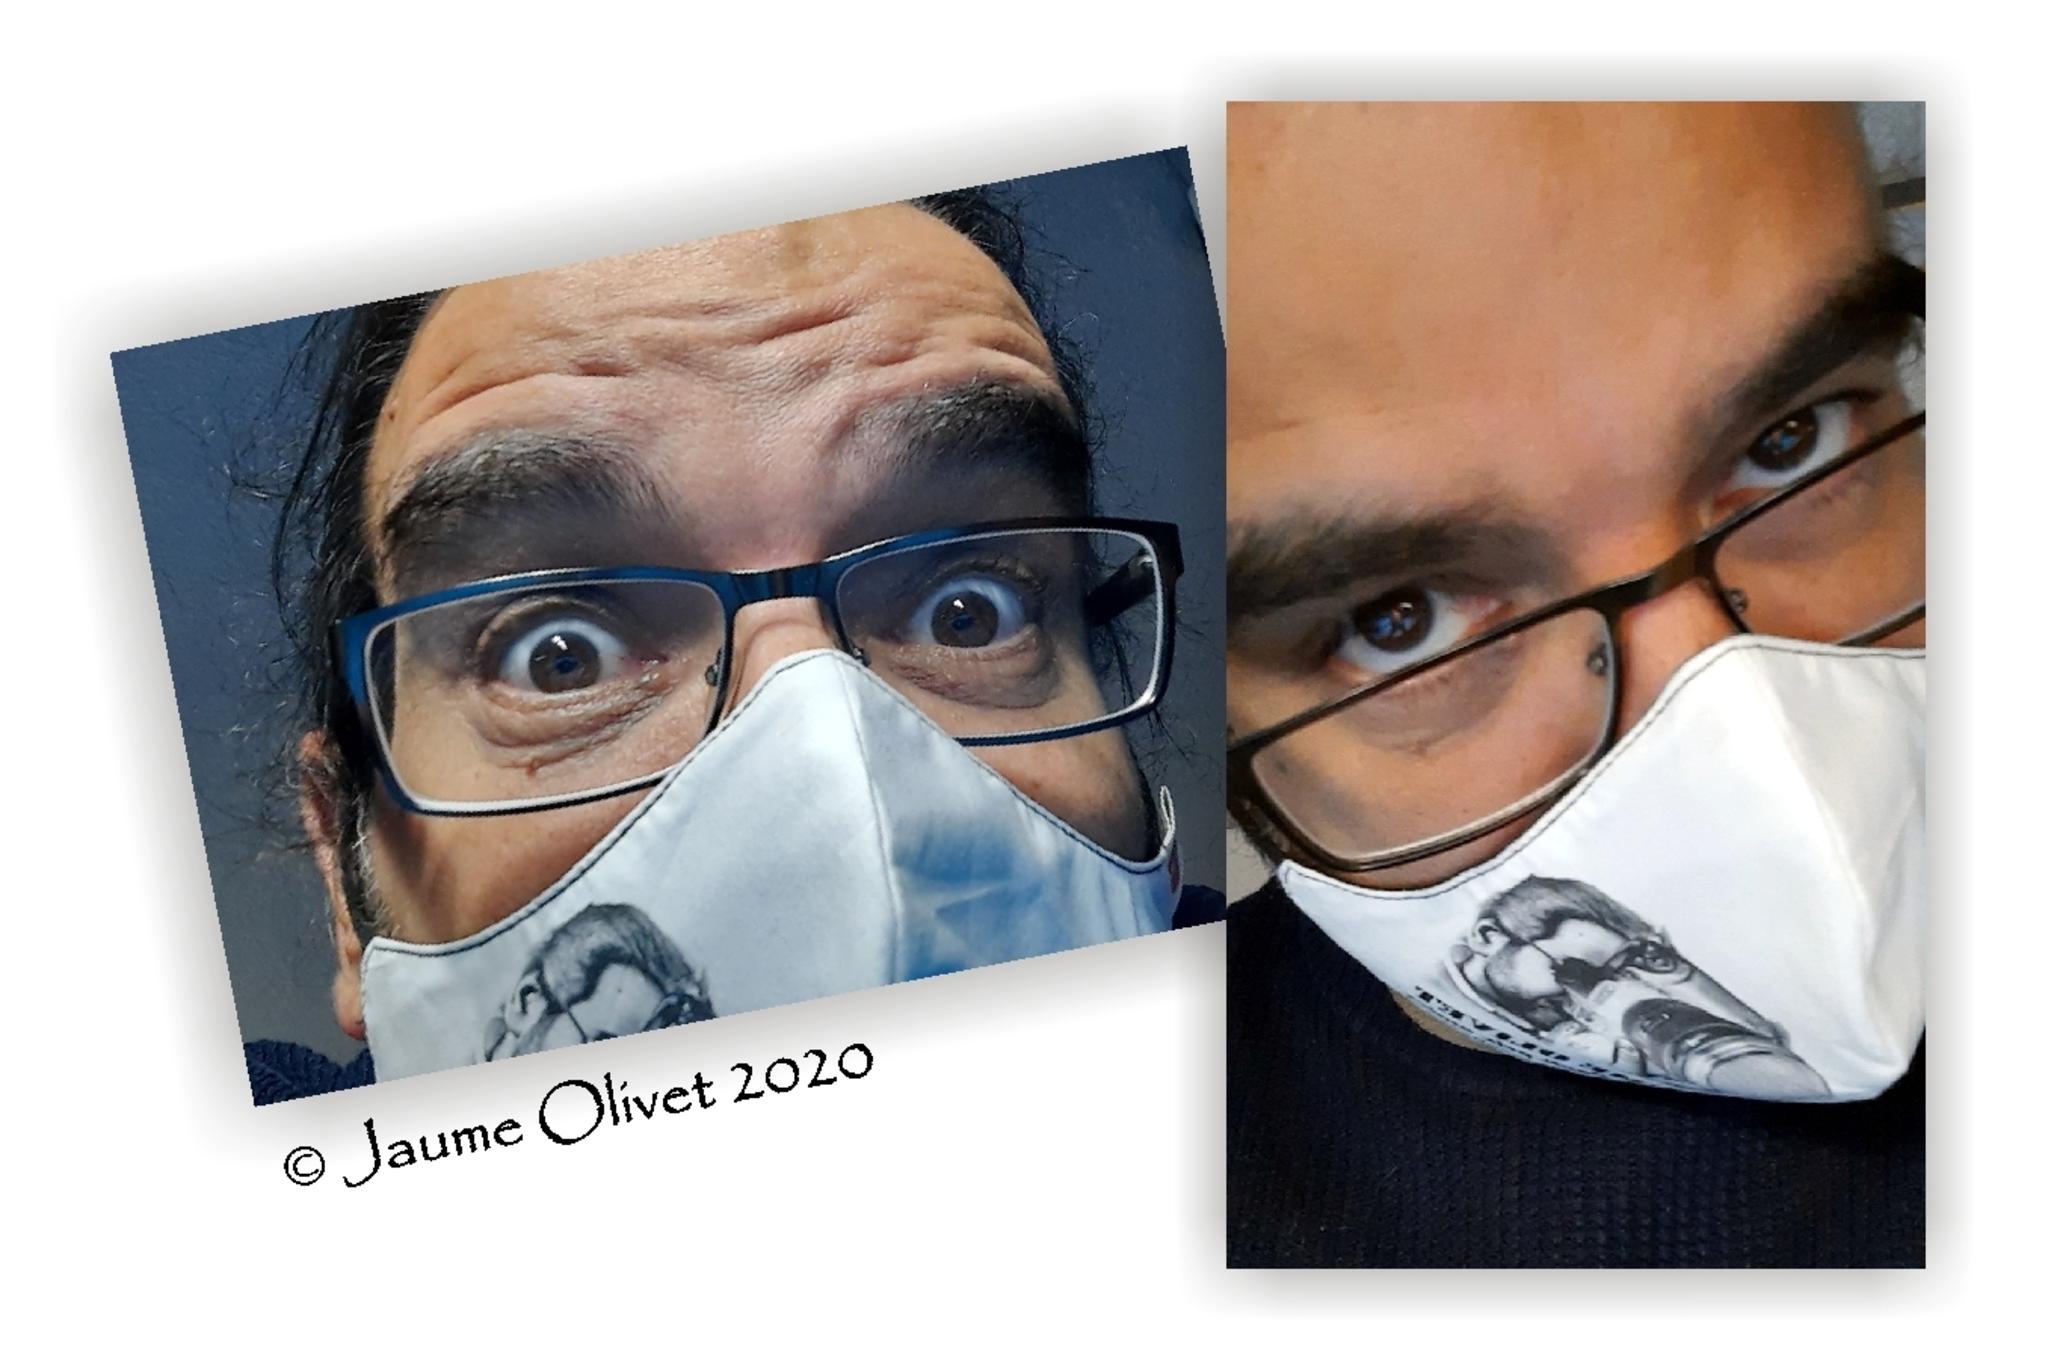  Jaume Olivet 2020